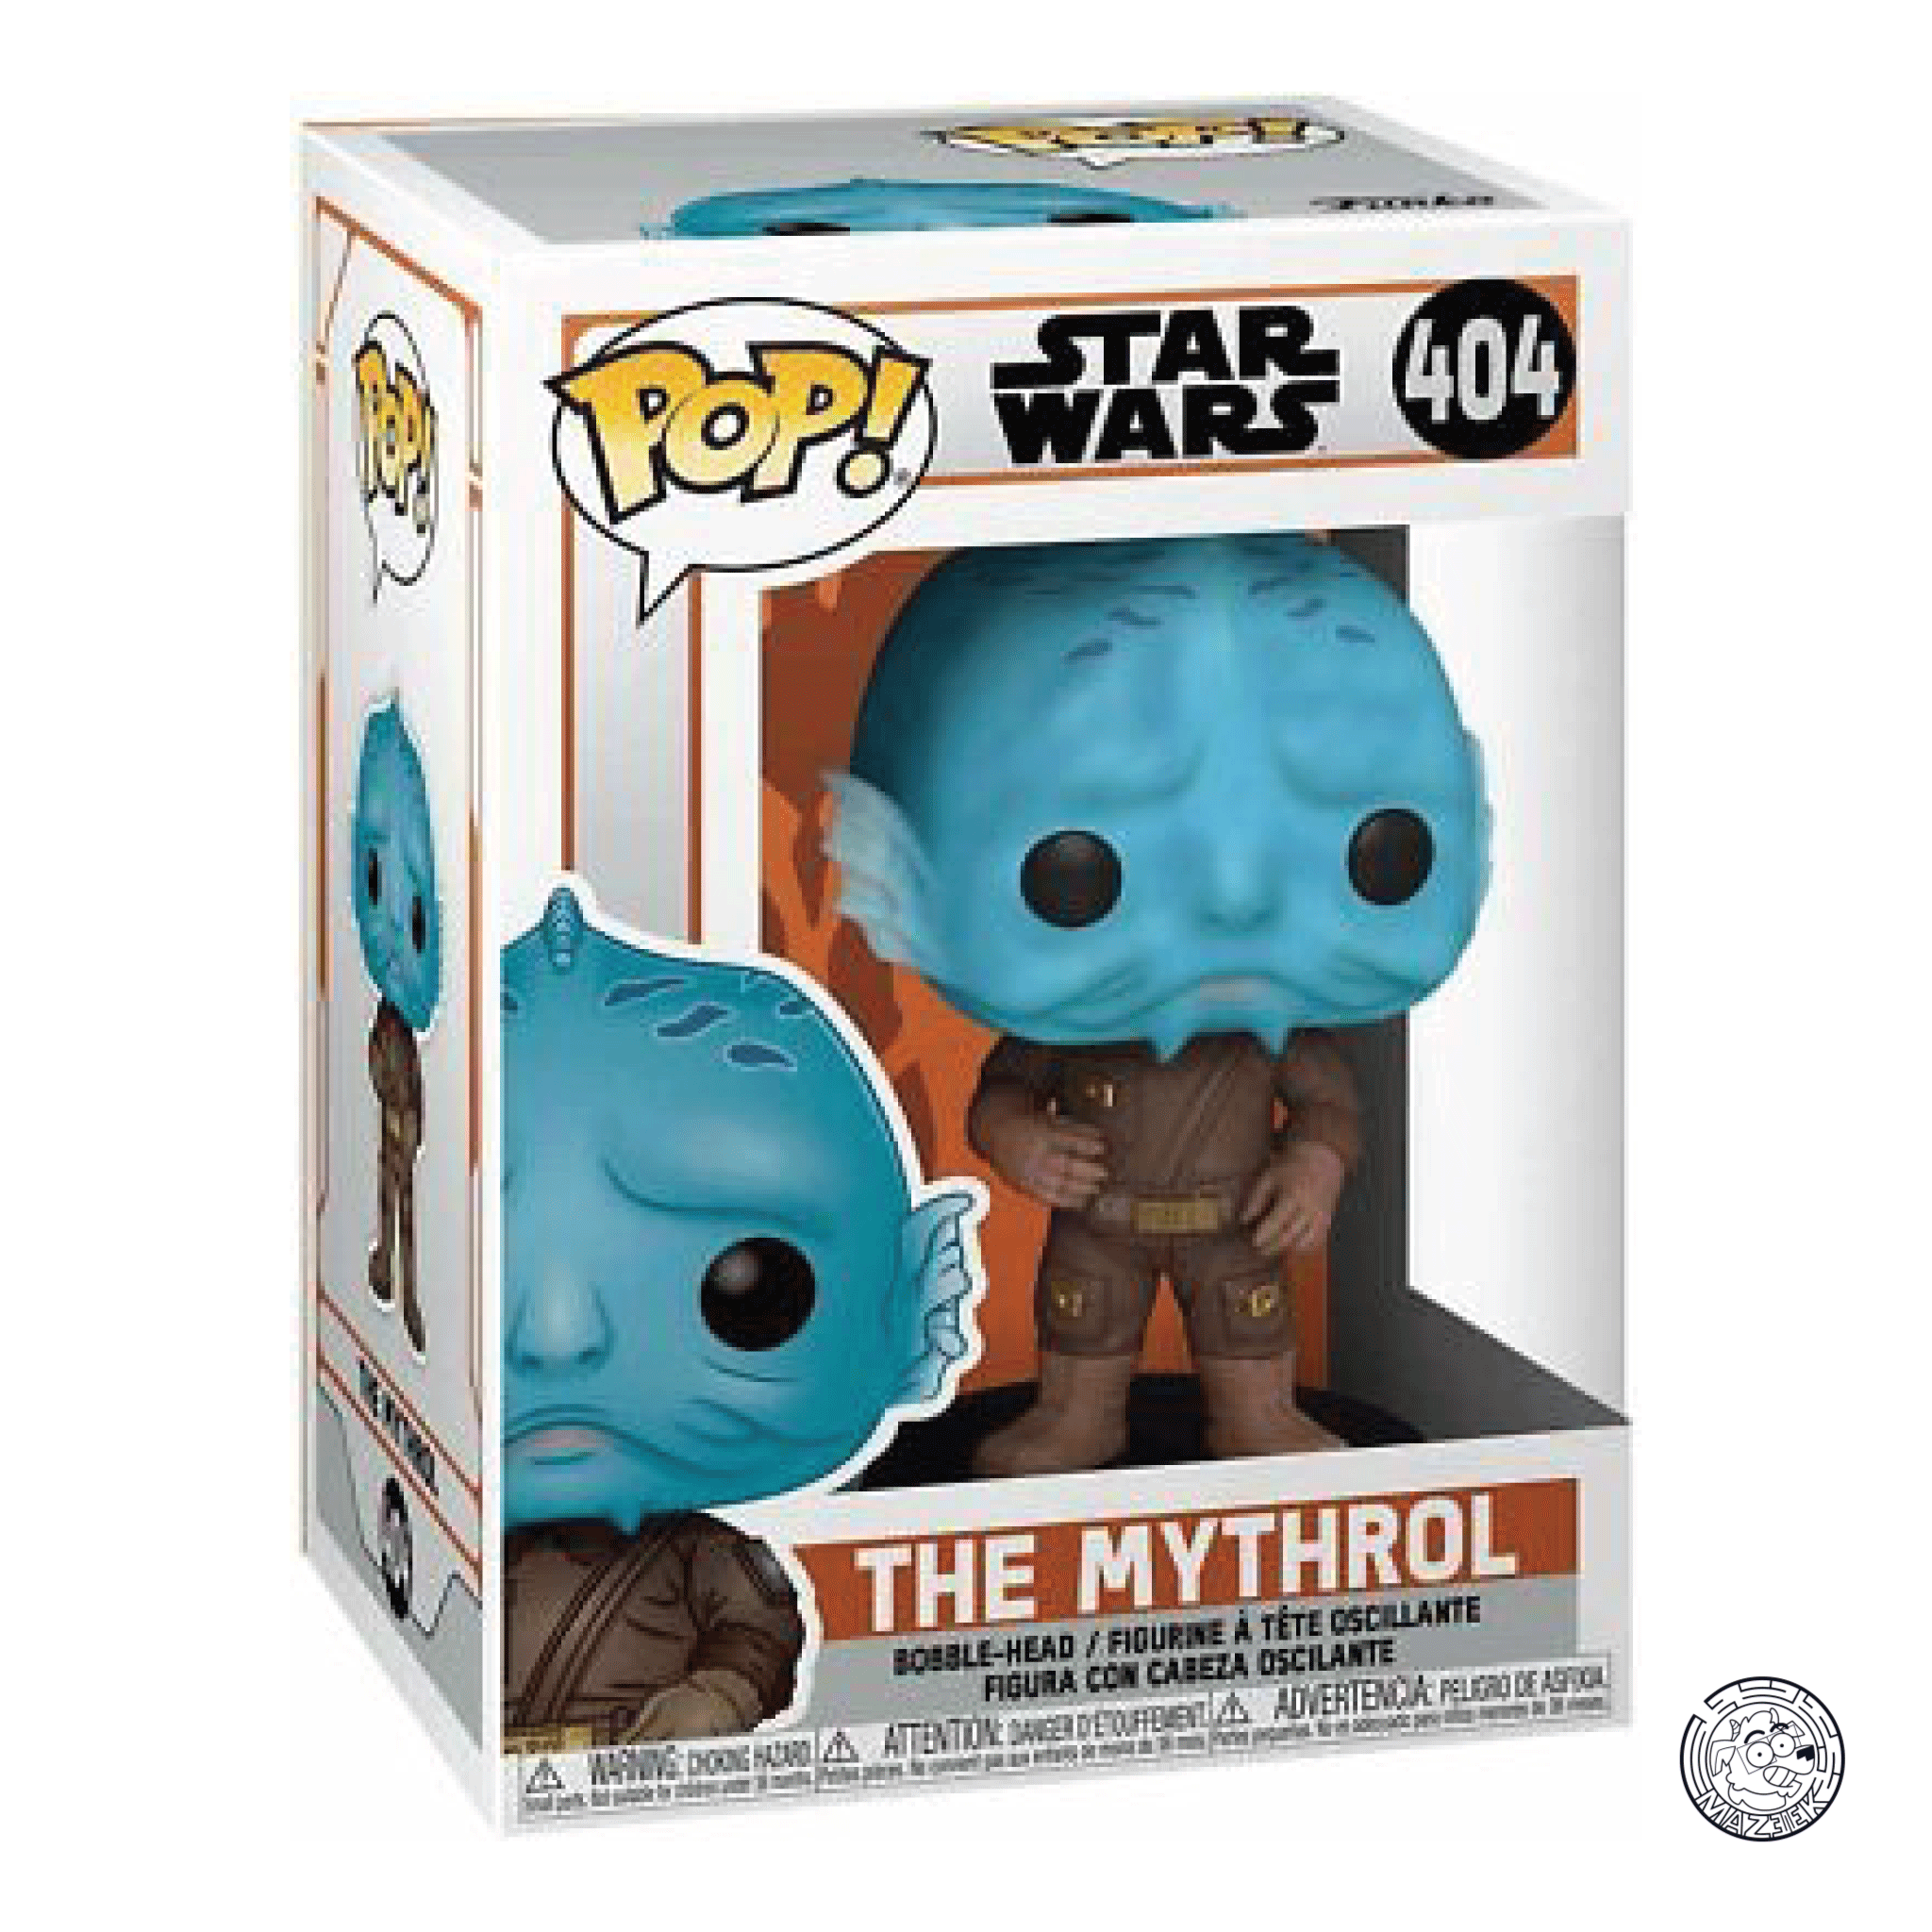 Funko POP! Star Wars: The Mythrol 404